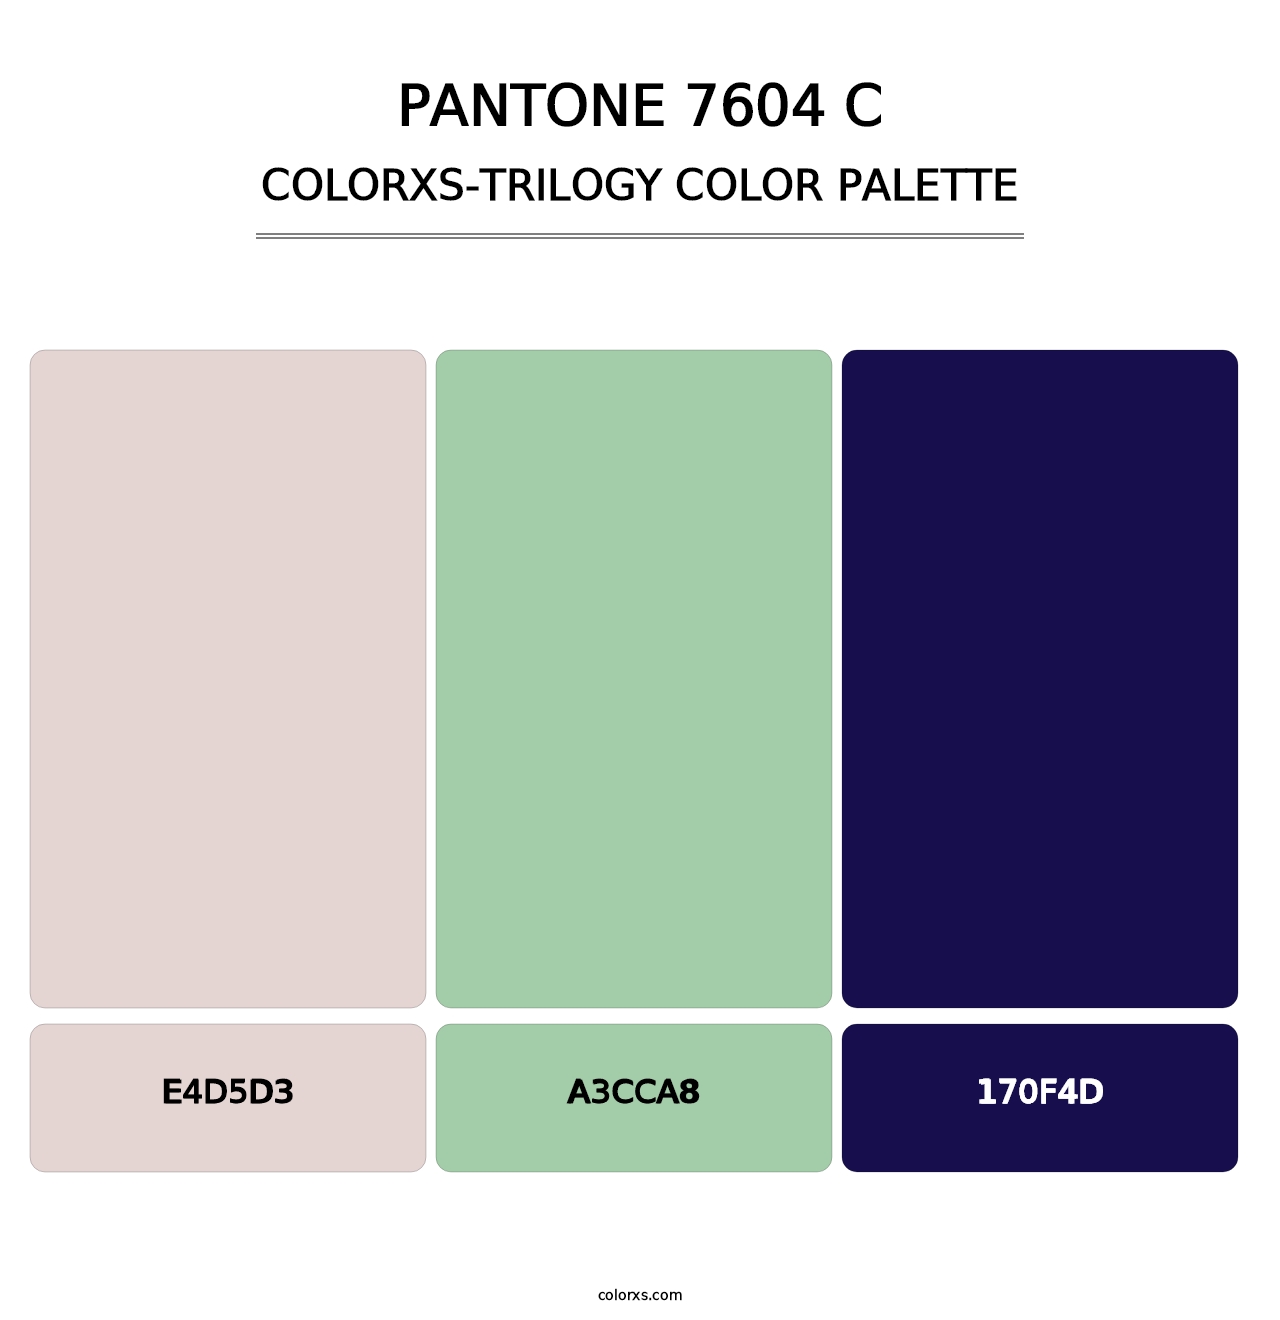 PANTONE 7604 C - Colorxs Trilogy Palette